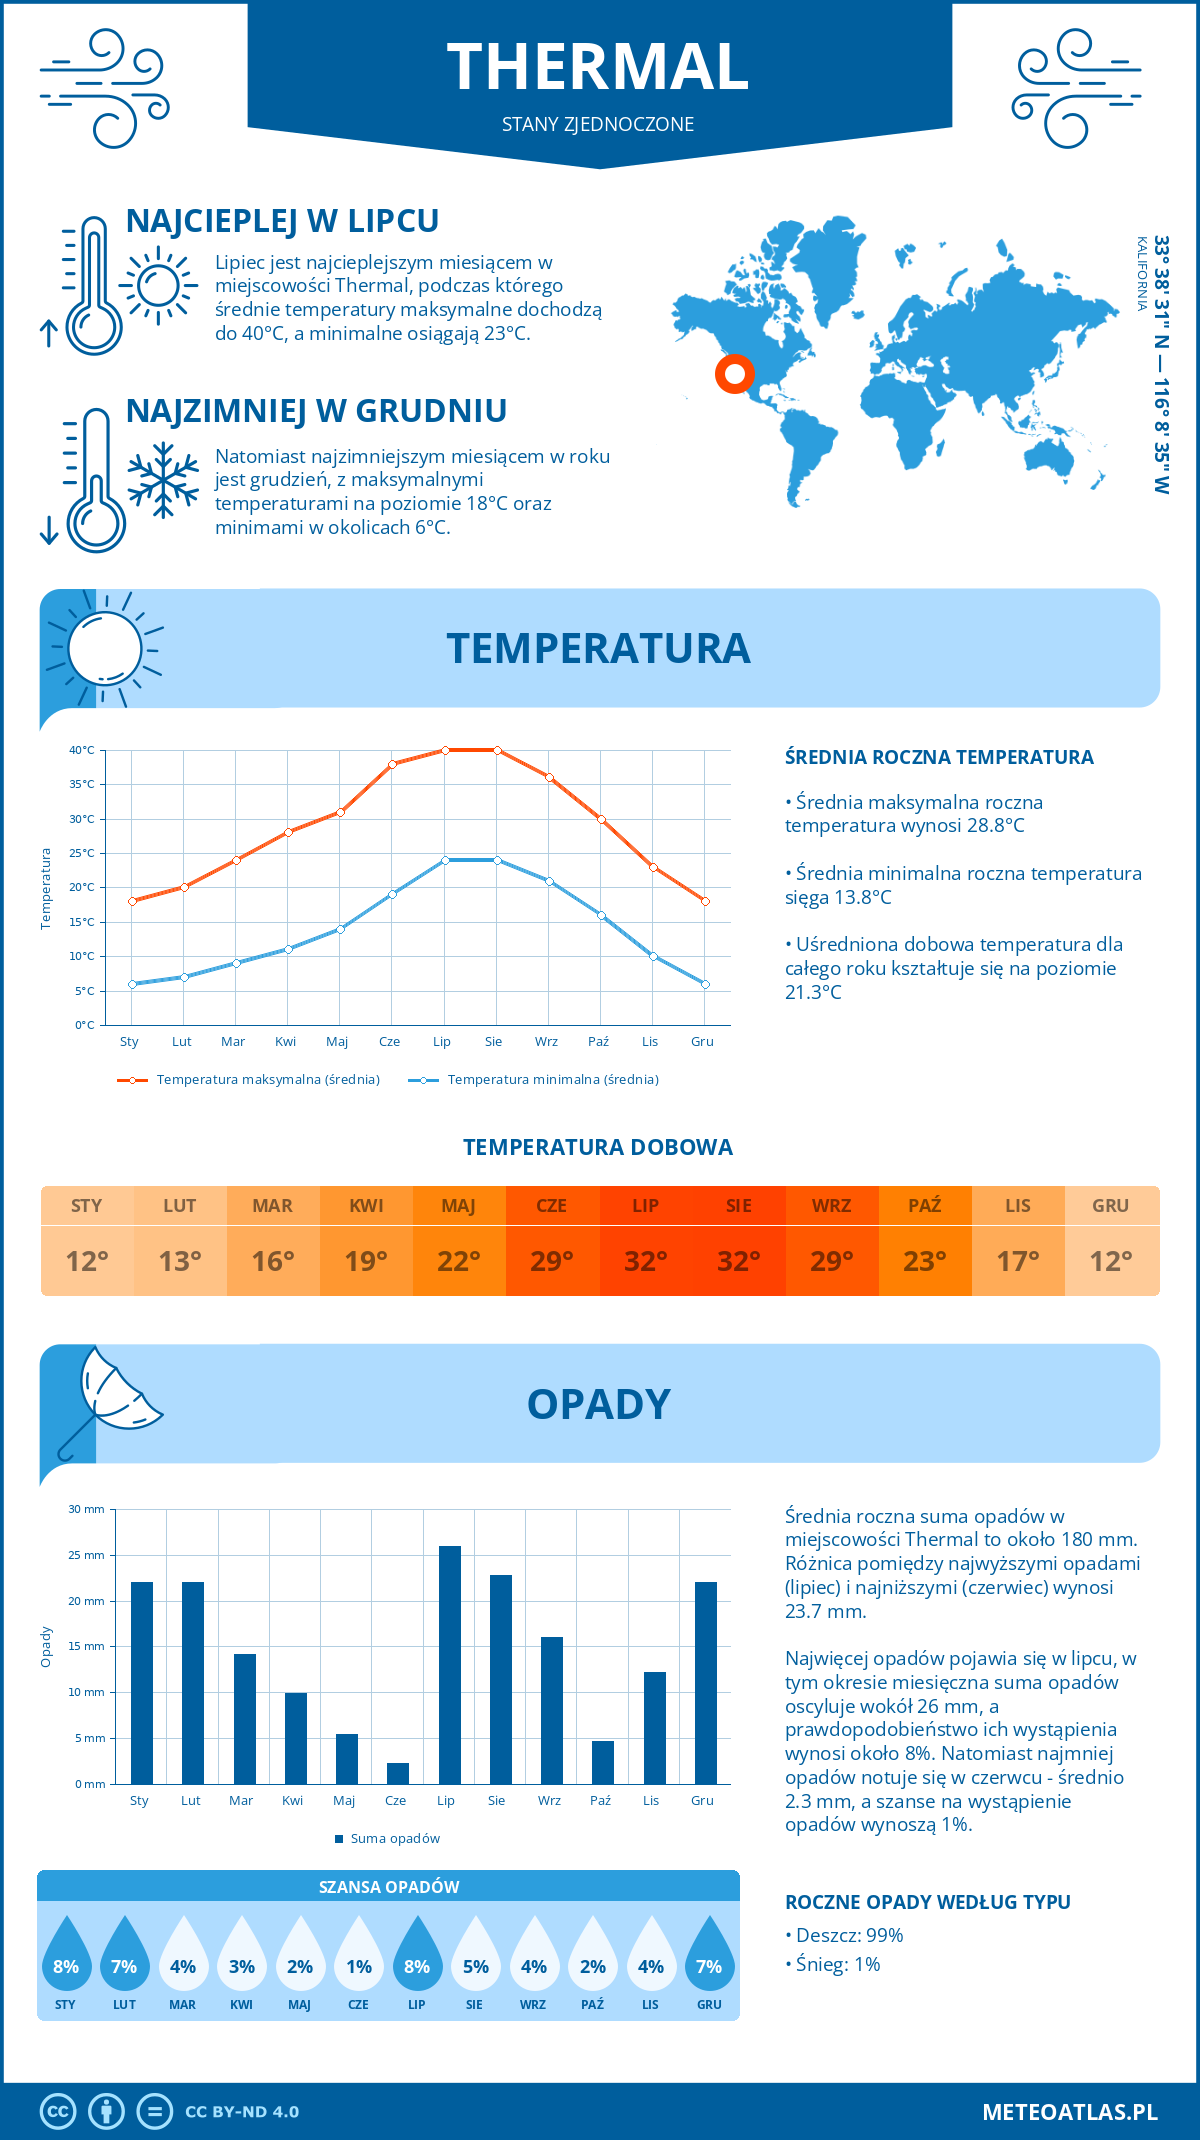 Pogoda Thermal (Stany Zjednoczone). Temperatura oraz opady.